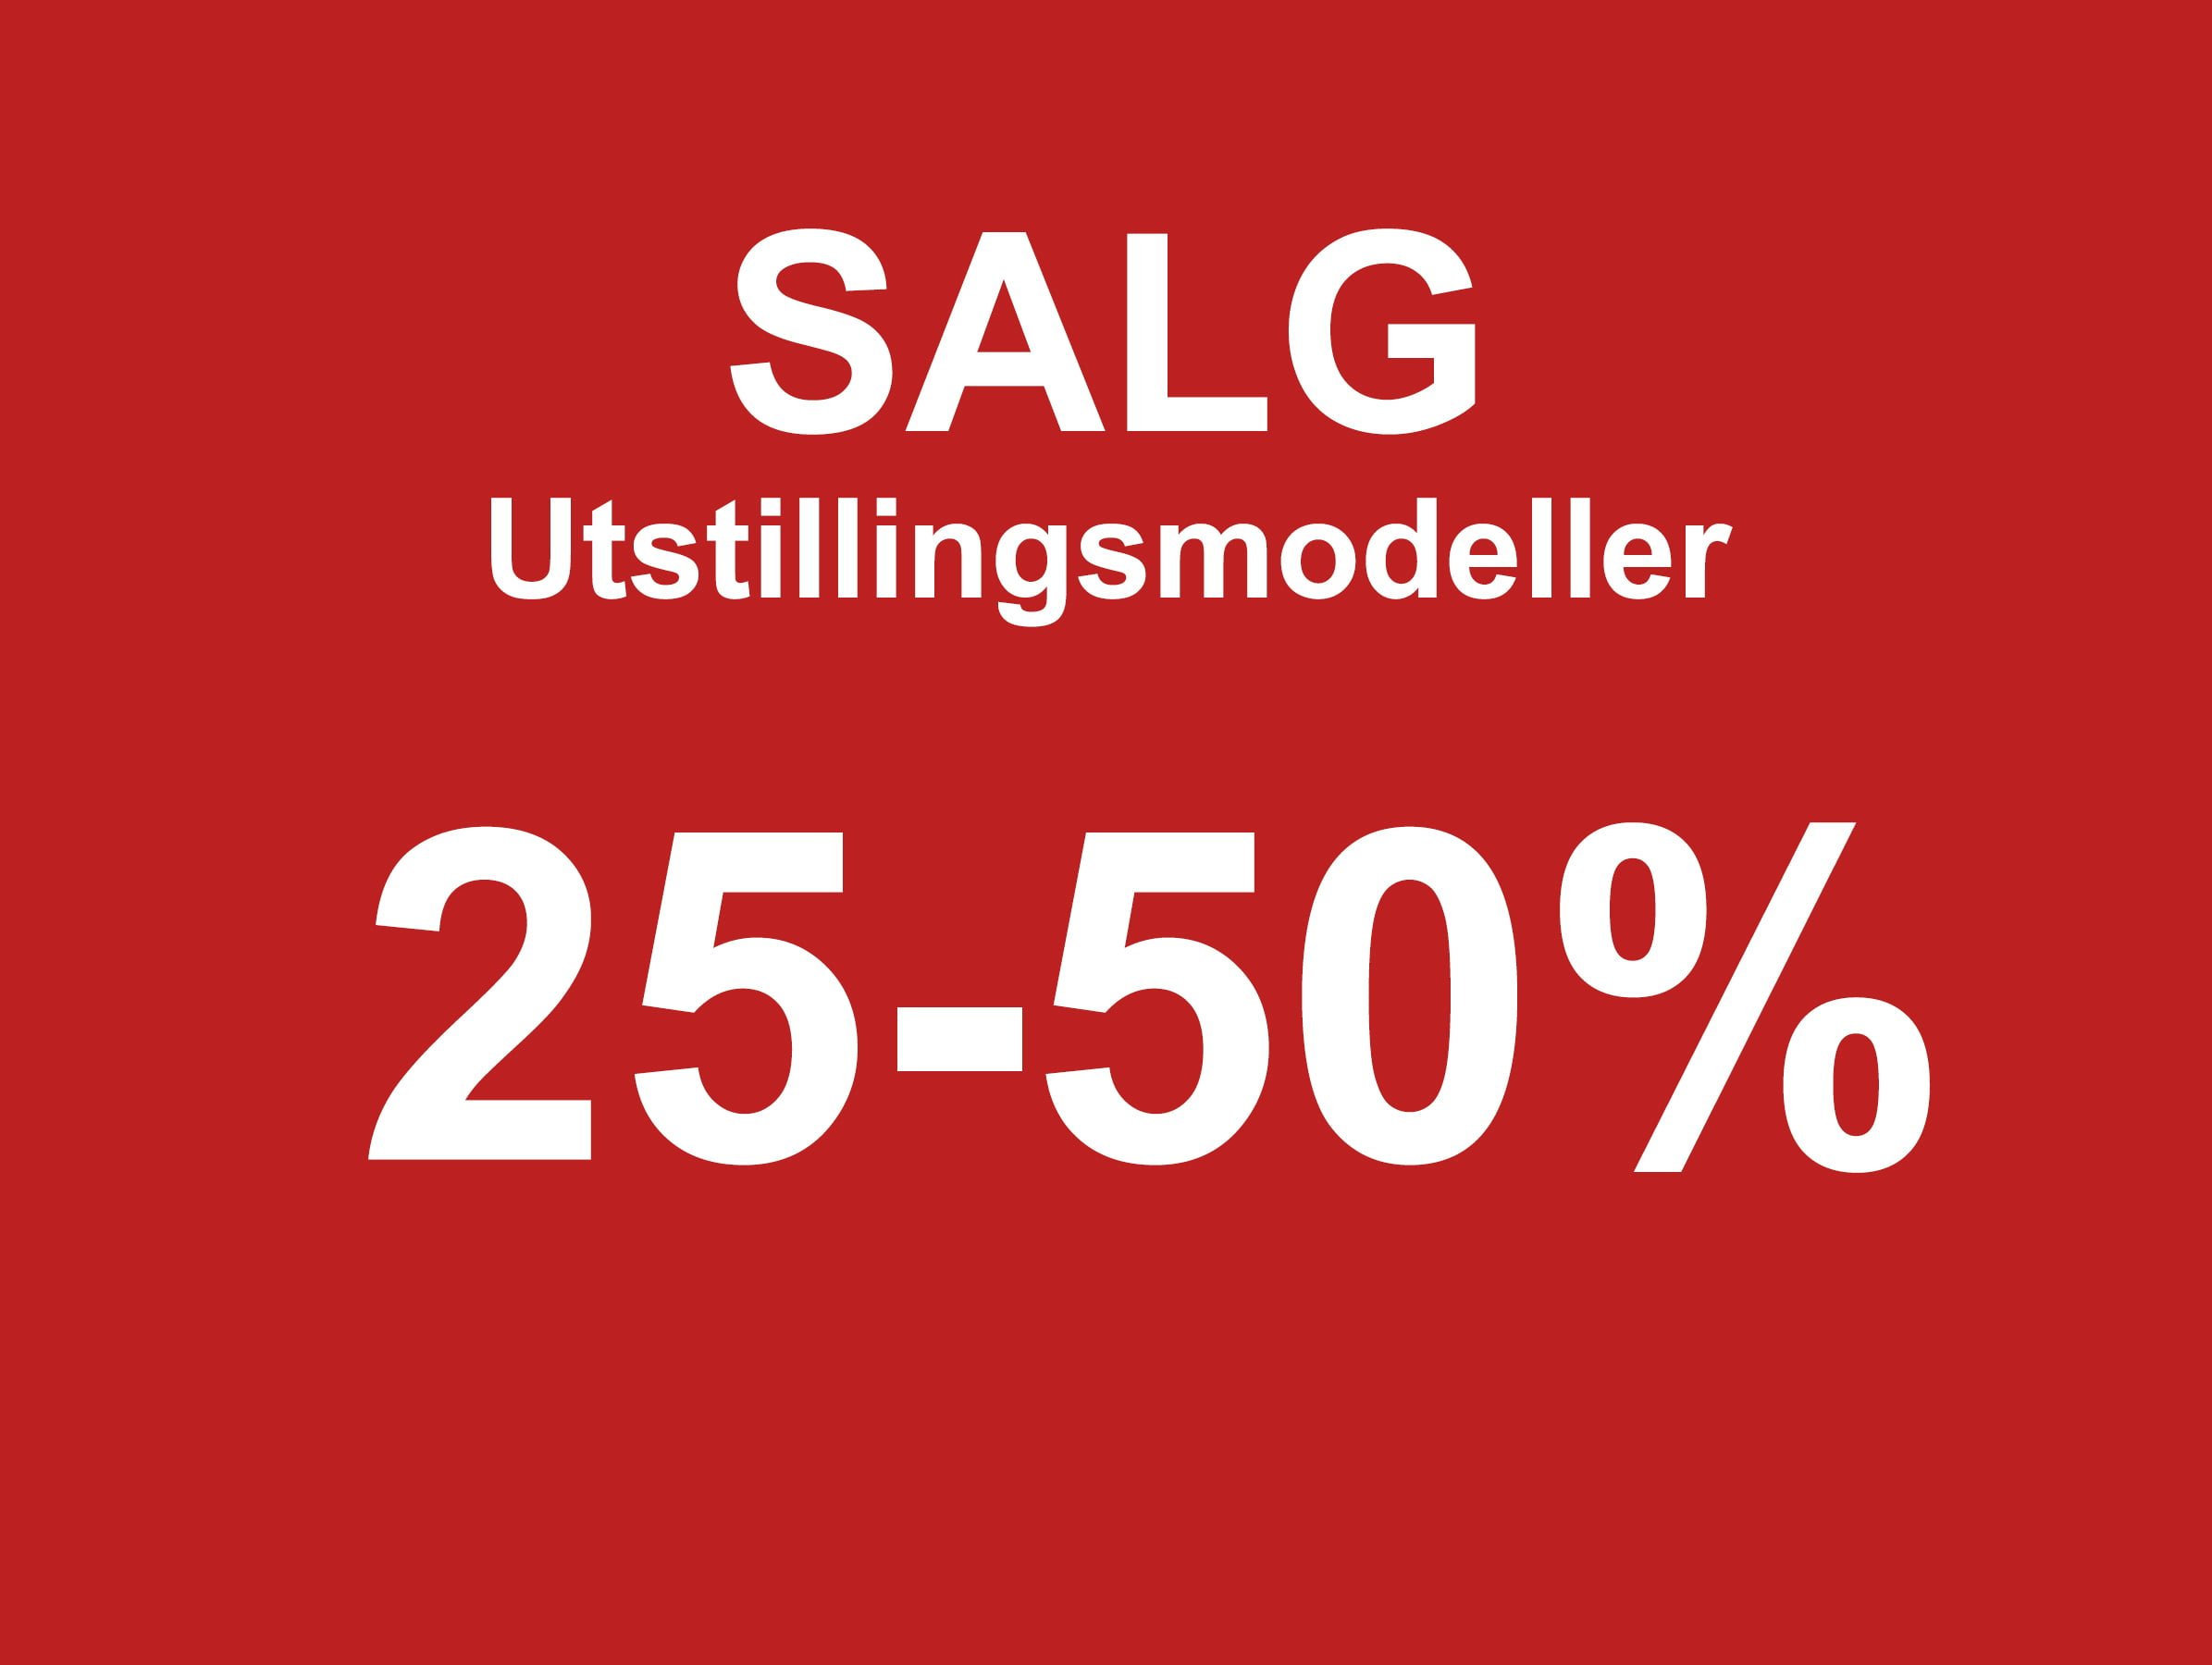 Utstillingsmodeller salg width=